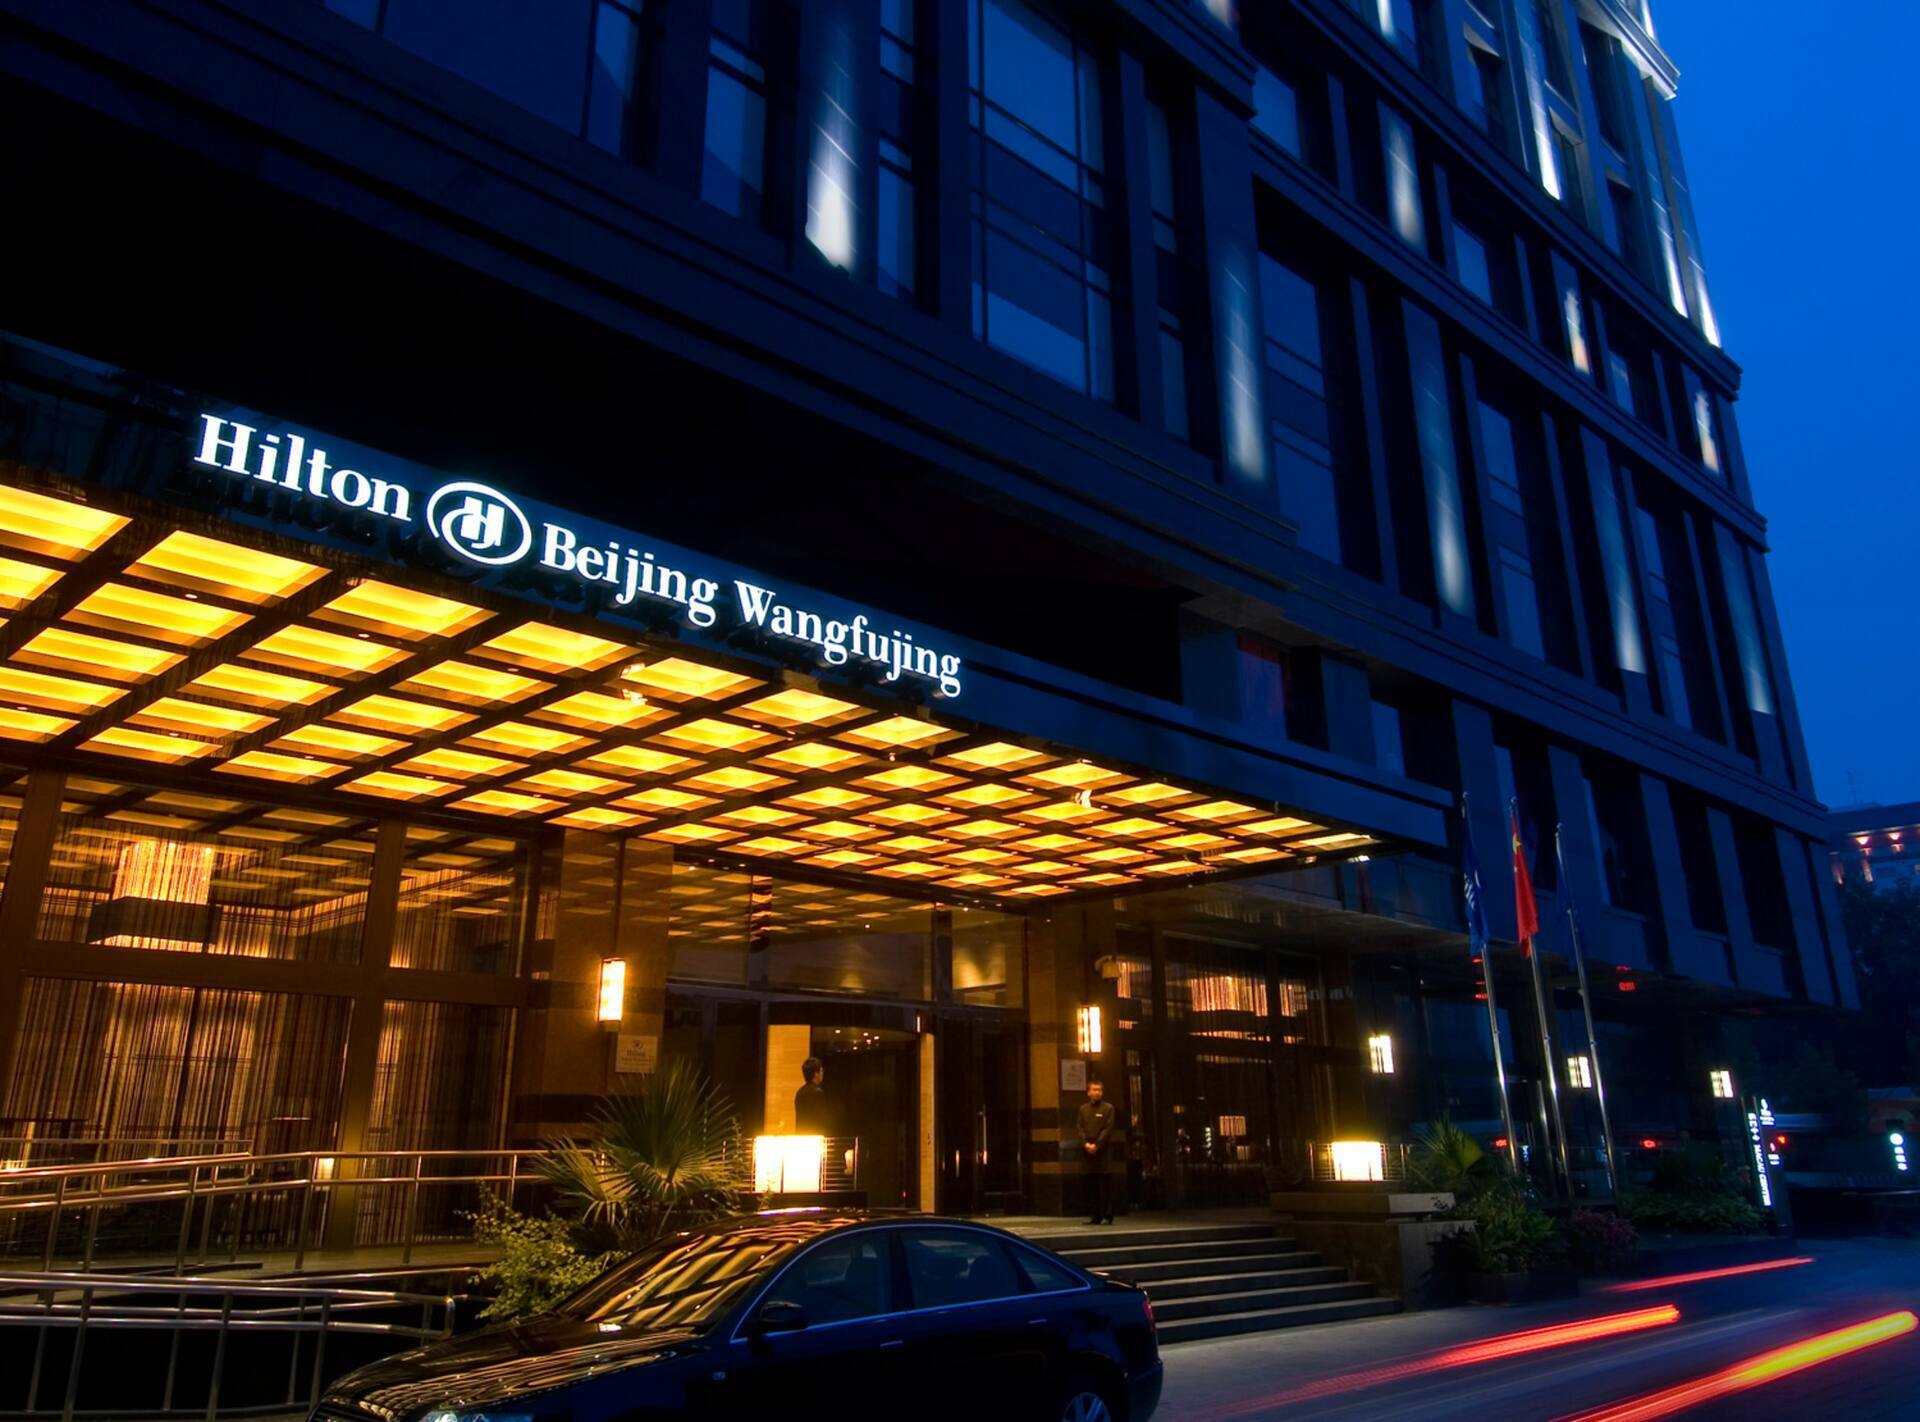 Photo of Hilton Beijing Wangfujing, Beijing, Dongcheng, China